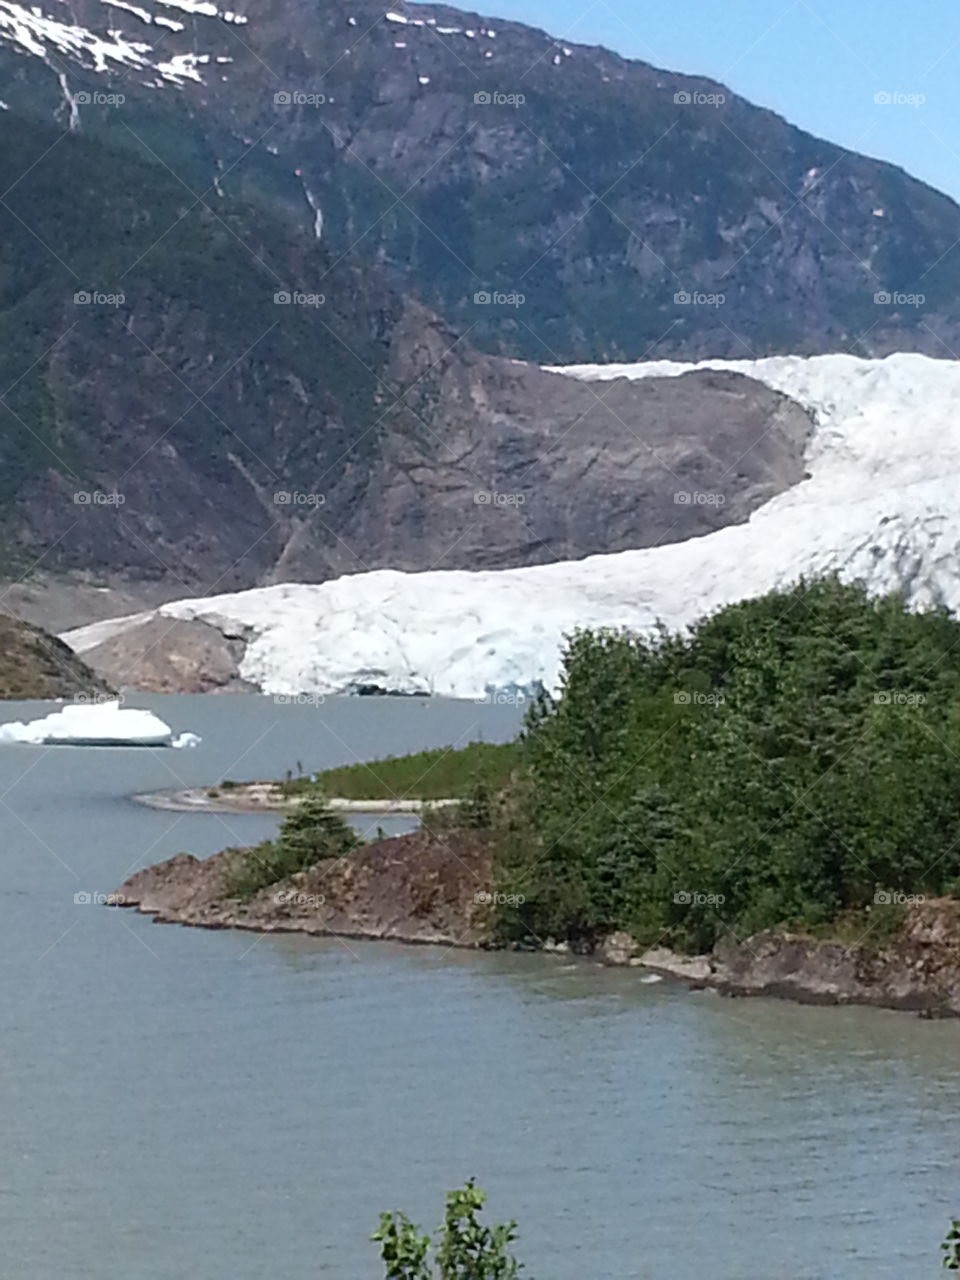 Mendenhall glacier